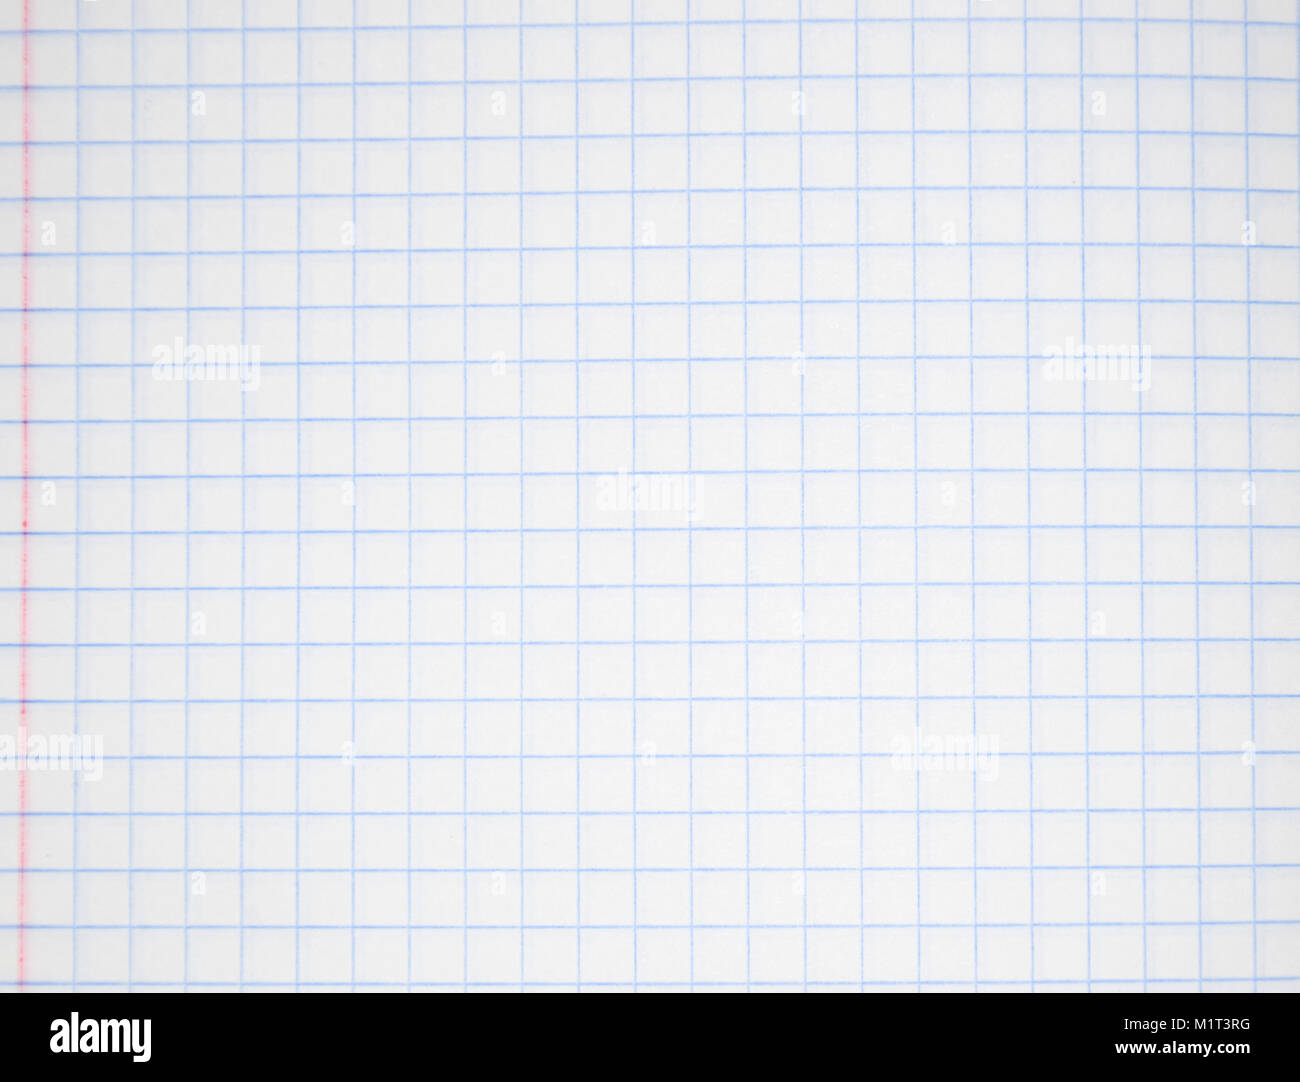 Notebook in das Feld ein. Mathe notebook. Hintergrund von einem Blatt Papier  Stockfotografie - Alamy